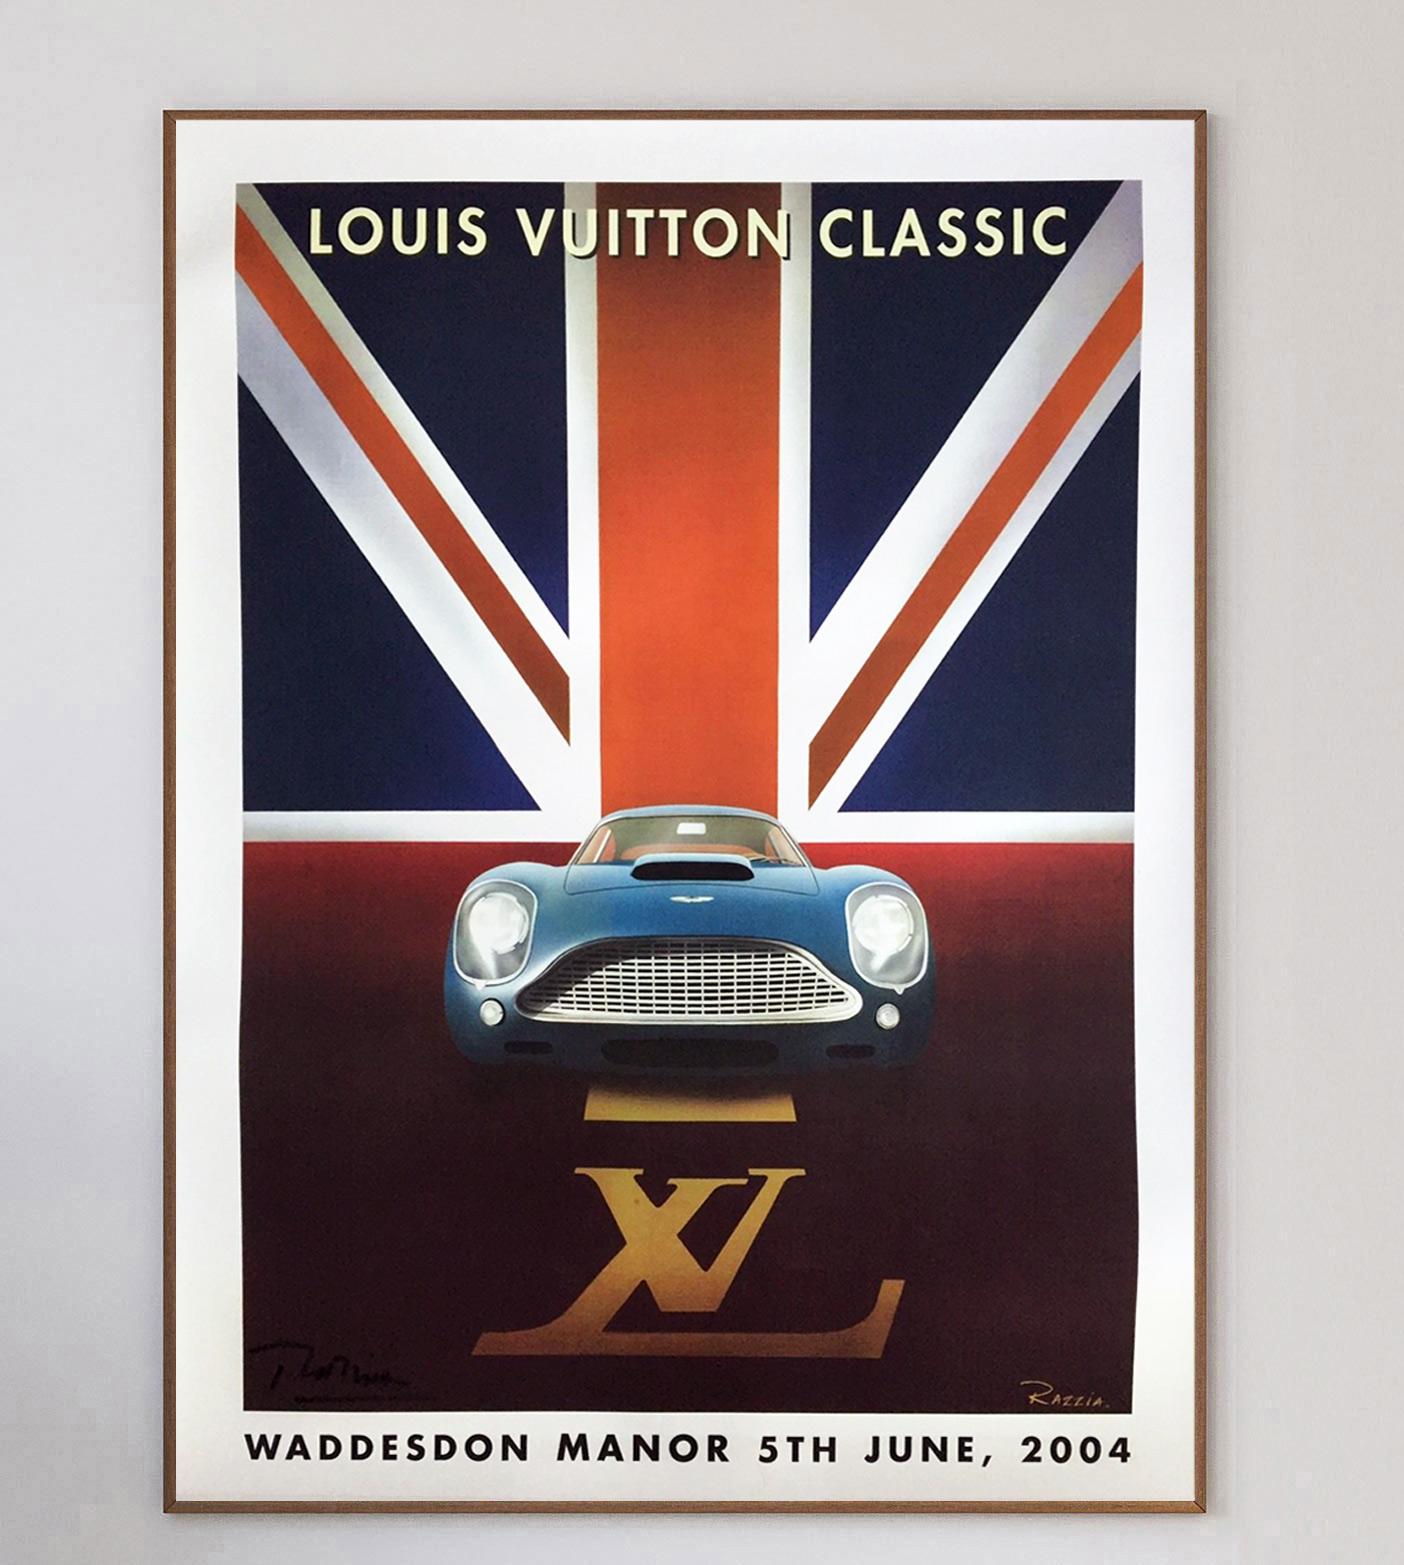 Organisé à Waddesdon Manor, à Oxford, en juin 2004, le Louis Vuitton Classic est un événement organisé par la marque de luxe française. Représentant une superbe Aston Martin devant un Union Jack, le design art déco est entièrement